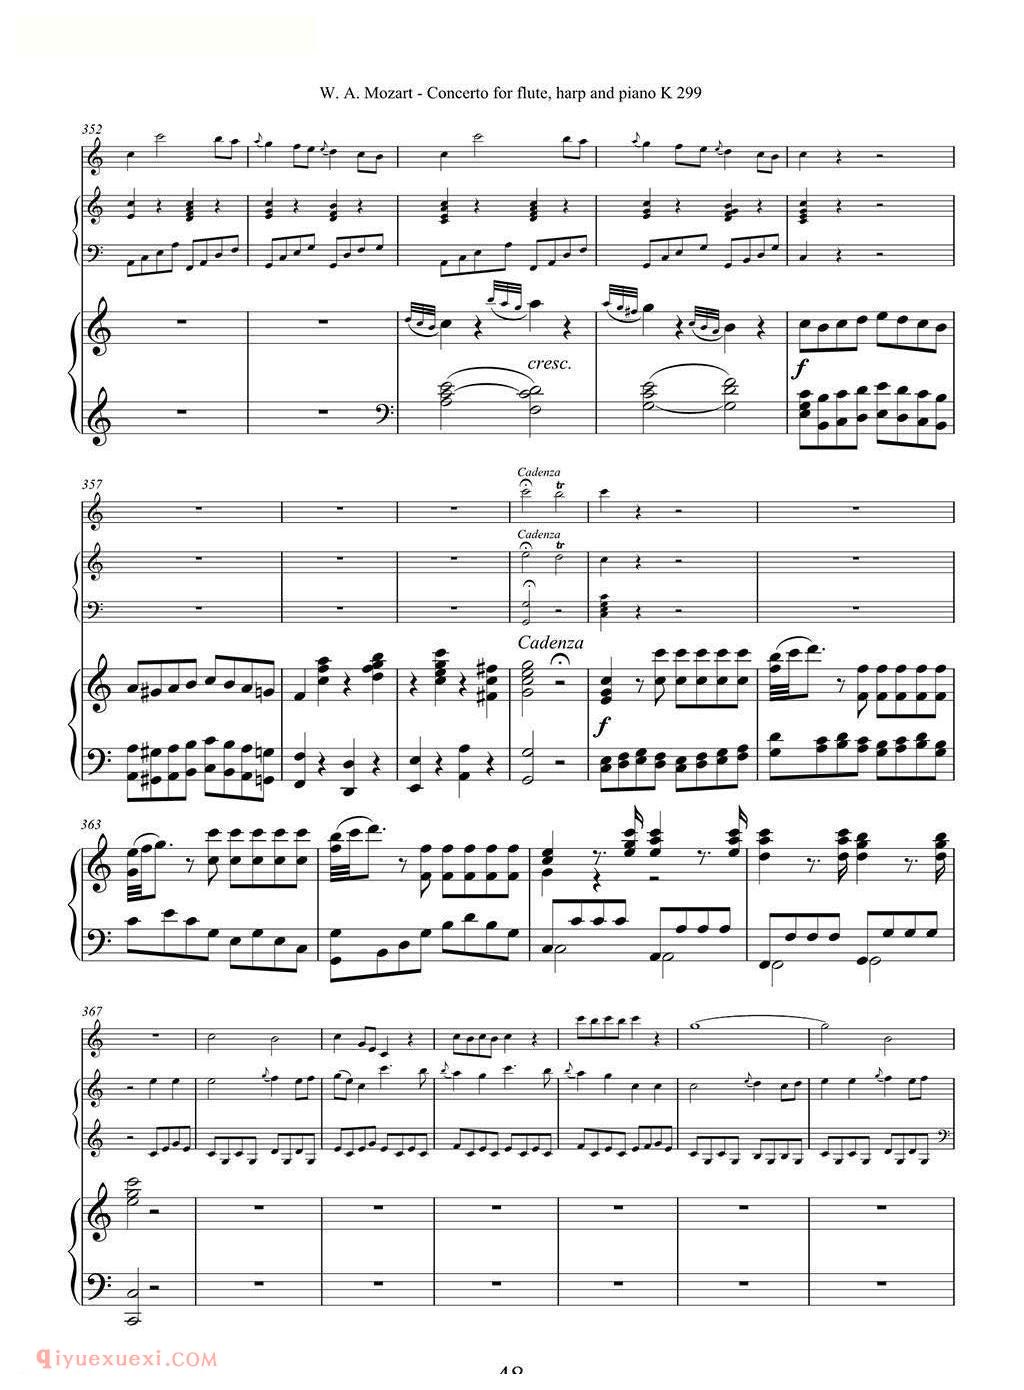 长笛竖琴钢伴谱/莫扎特C大调长笛竖琴协奏曲 K.299 Ⅲ